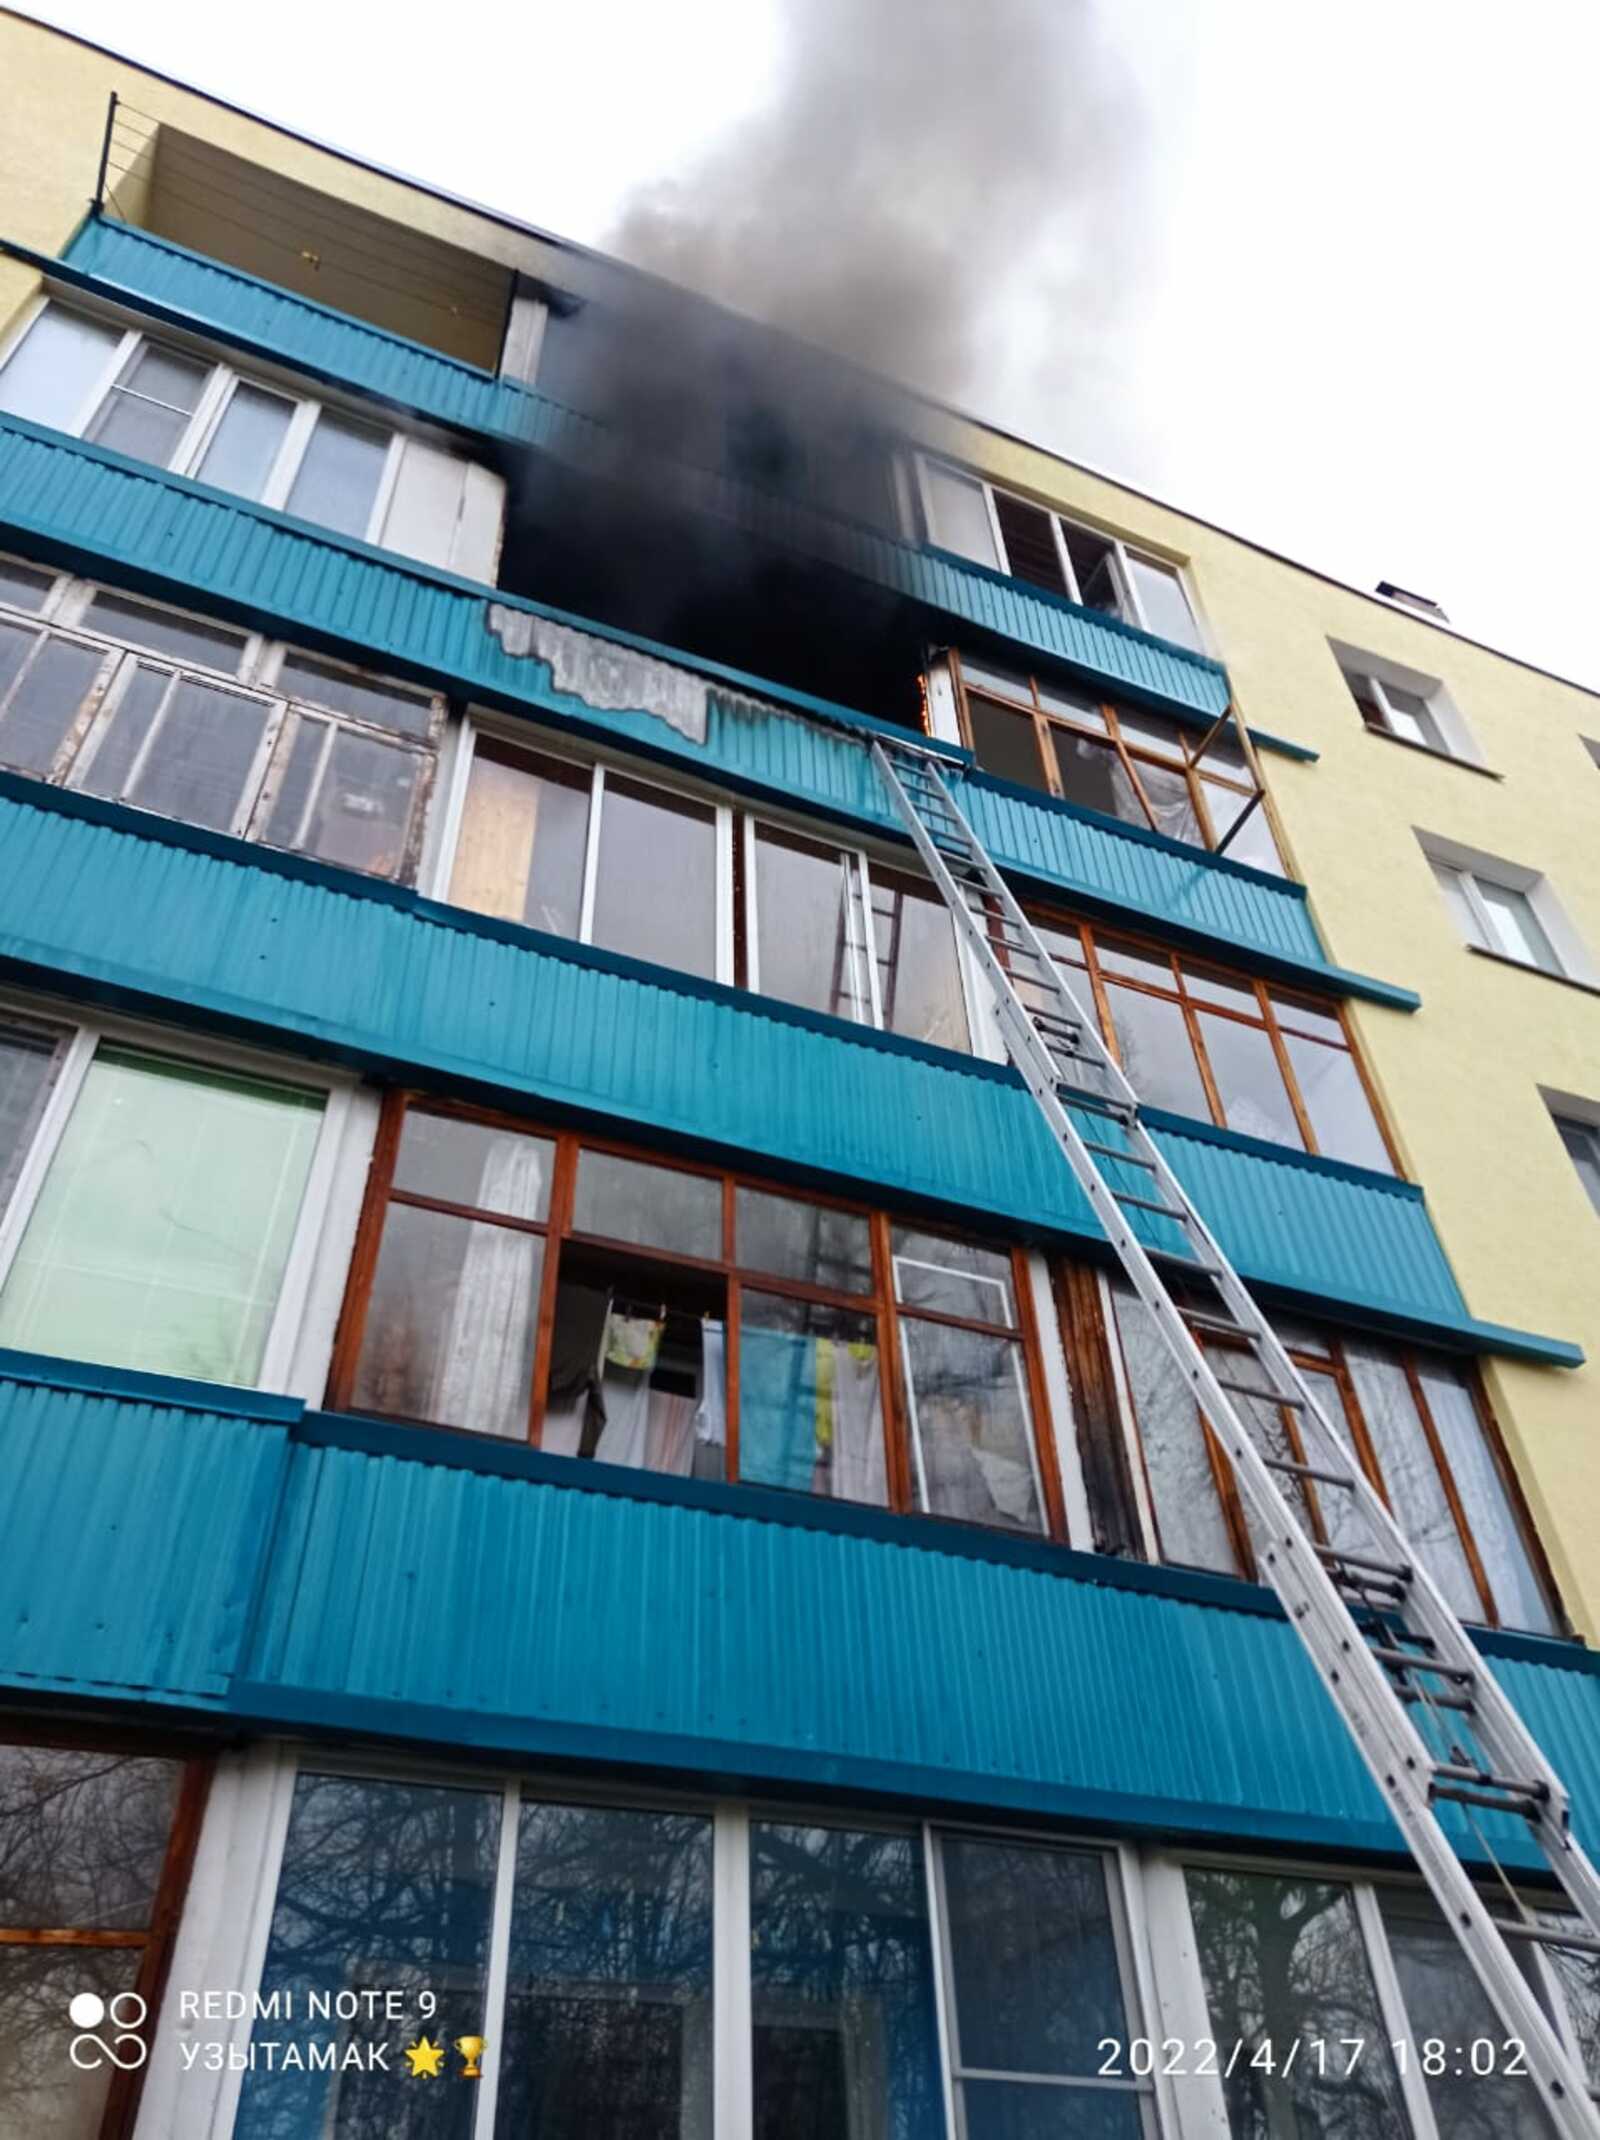 Сегодня в Чишминском районе случился пожар в многоквартирном доме